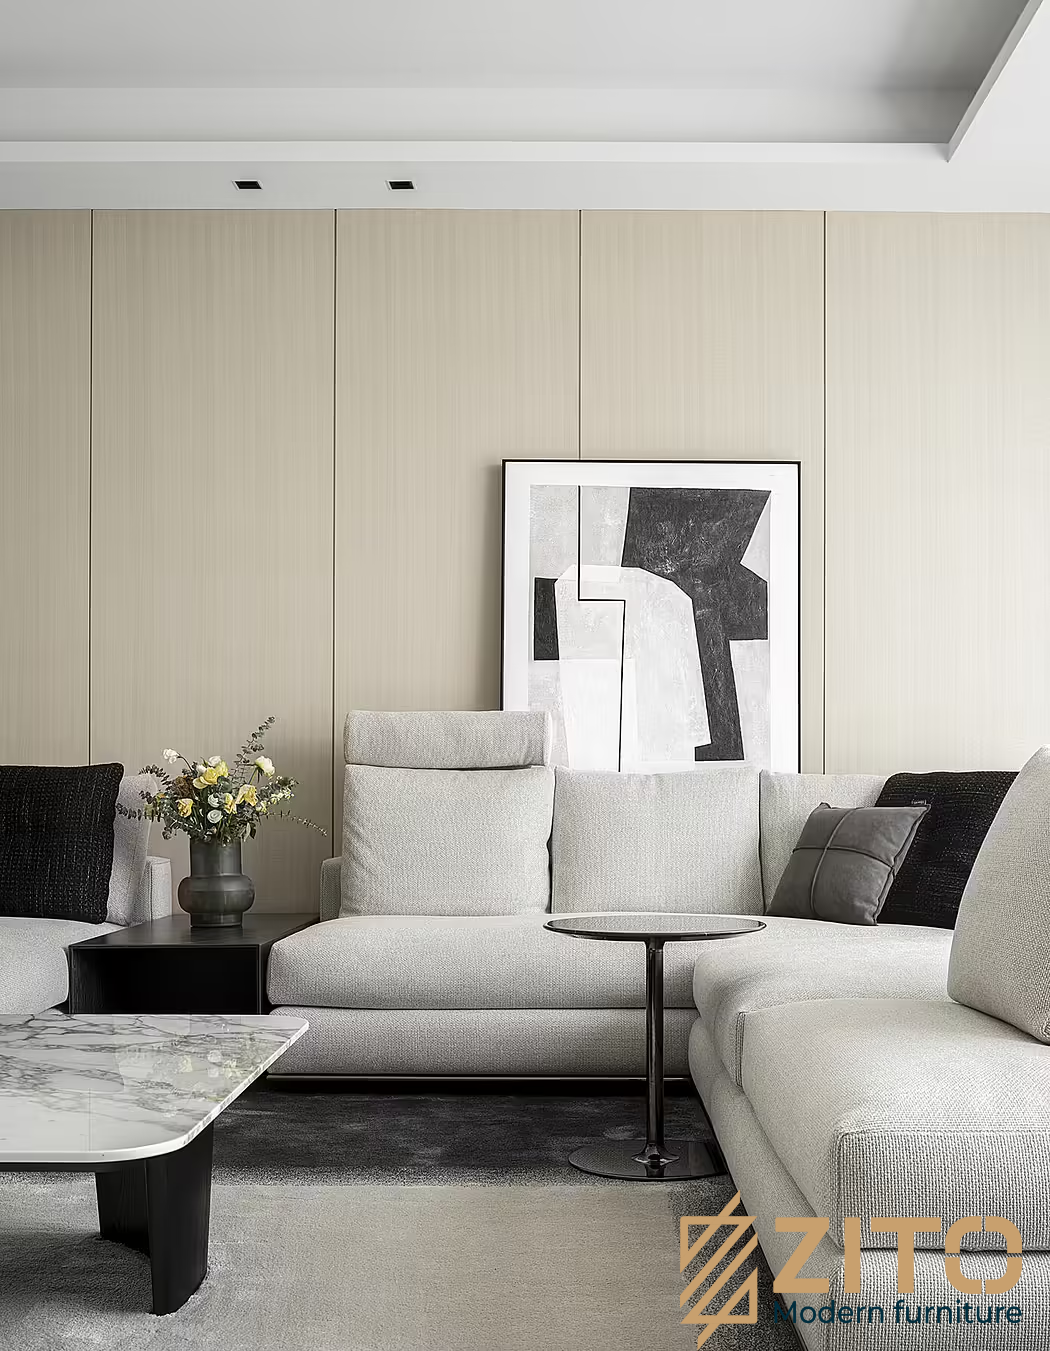 Không gian phòng khách của thiết kế nội thất biệt thự hiện đại được thiết kế tối giản, tinh tế và không quá cầu kỳ